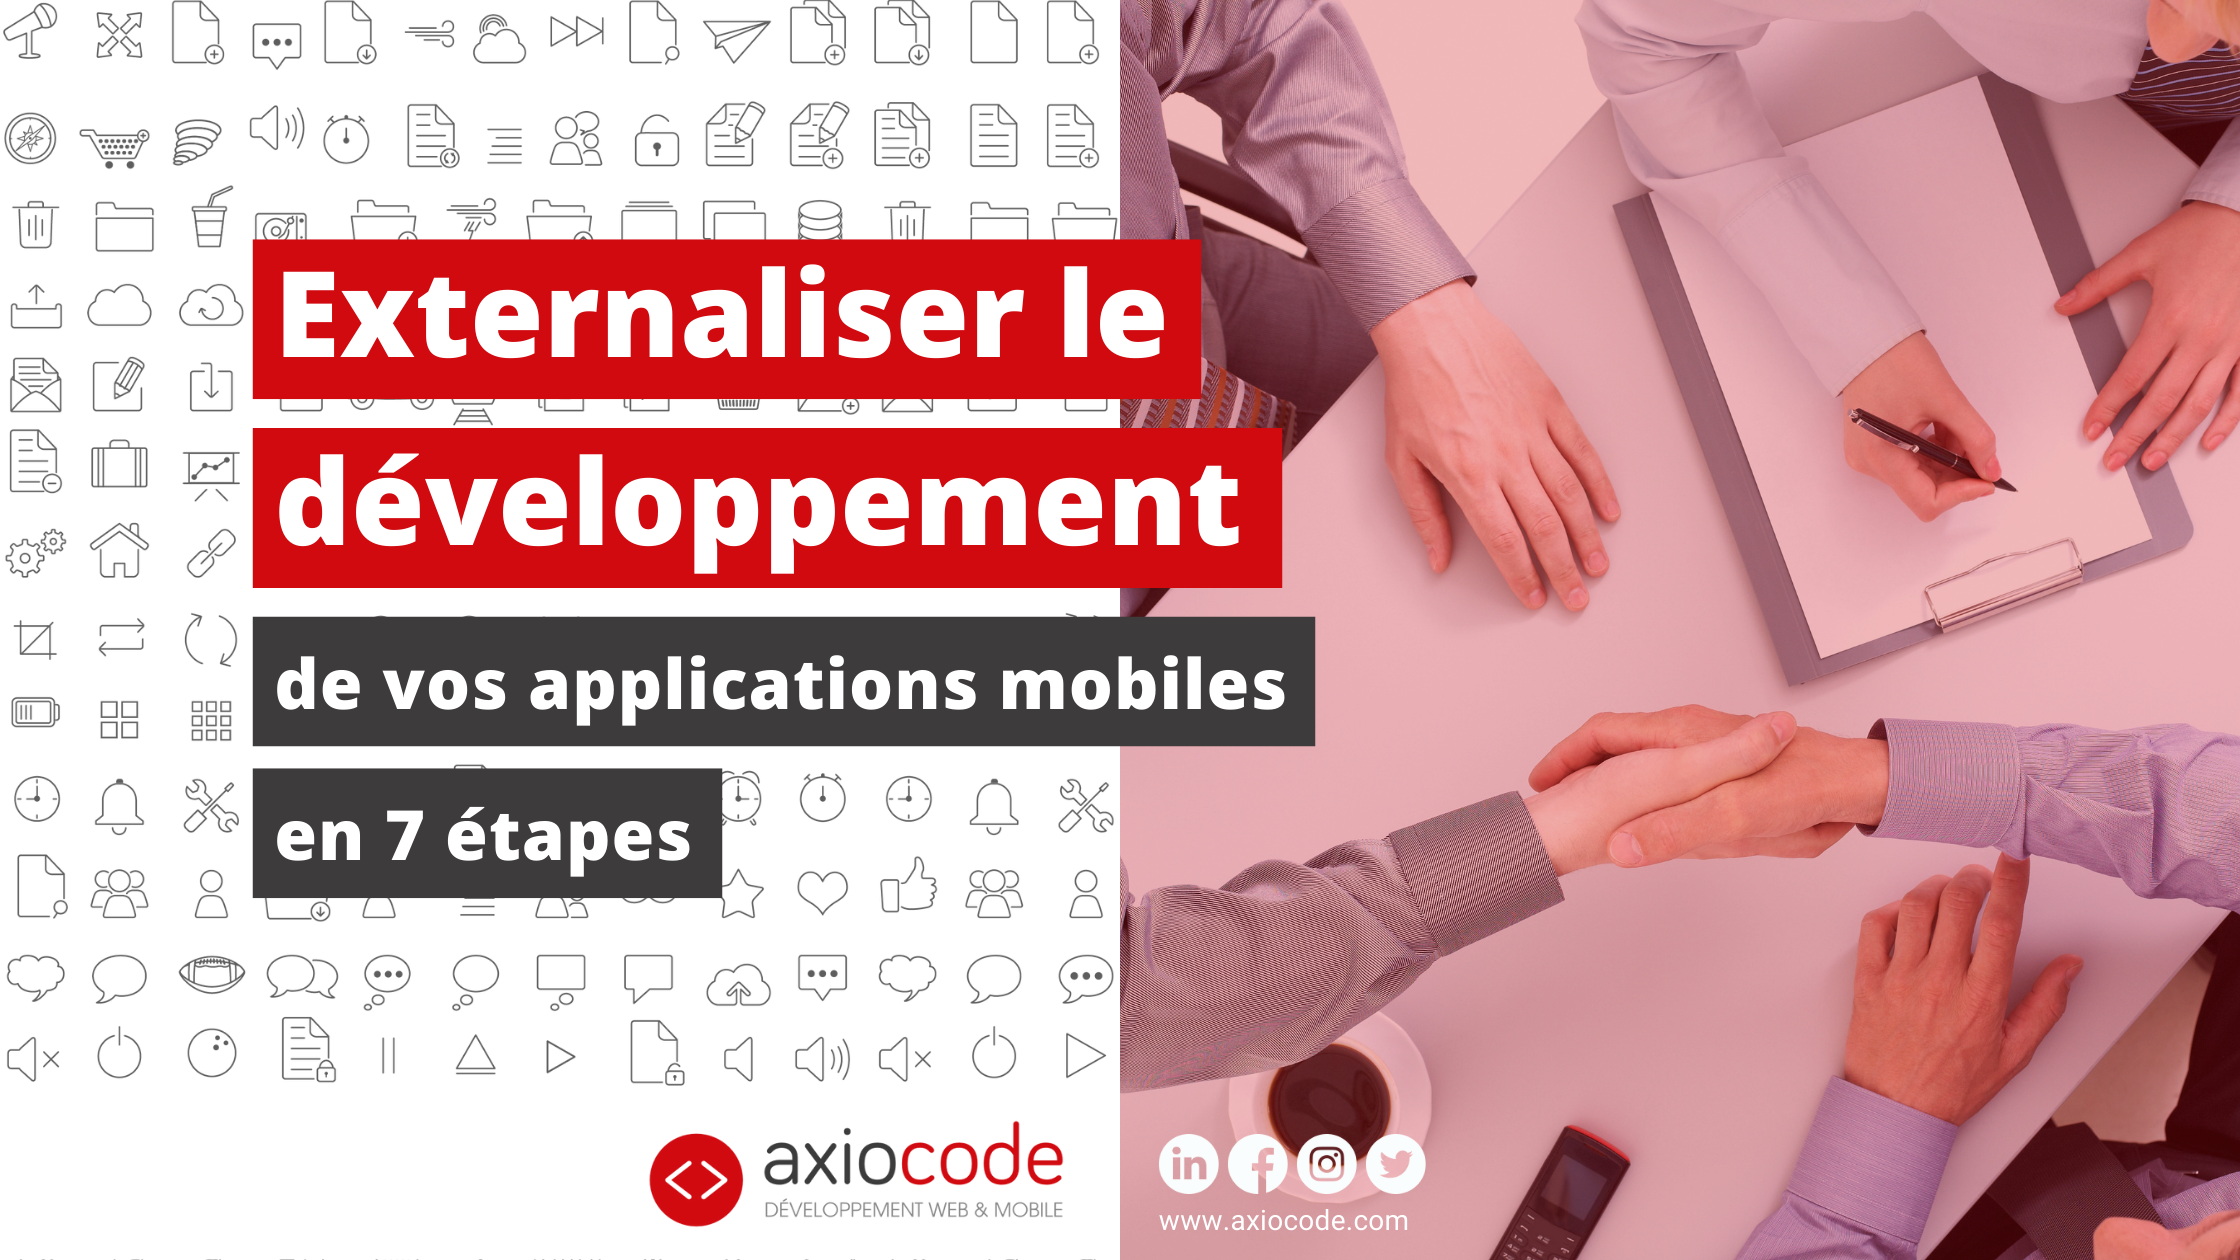 externaliser-developpement-applications-mobiles-agences-sous-traitance-axiocode